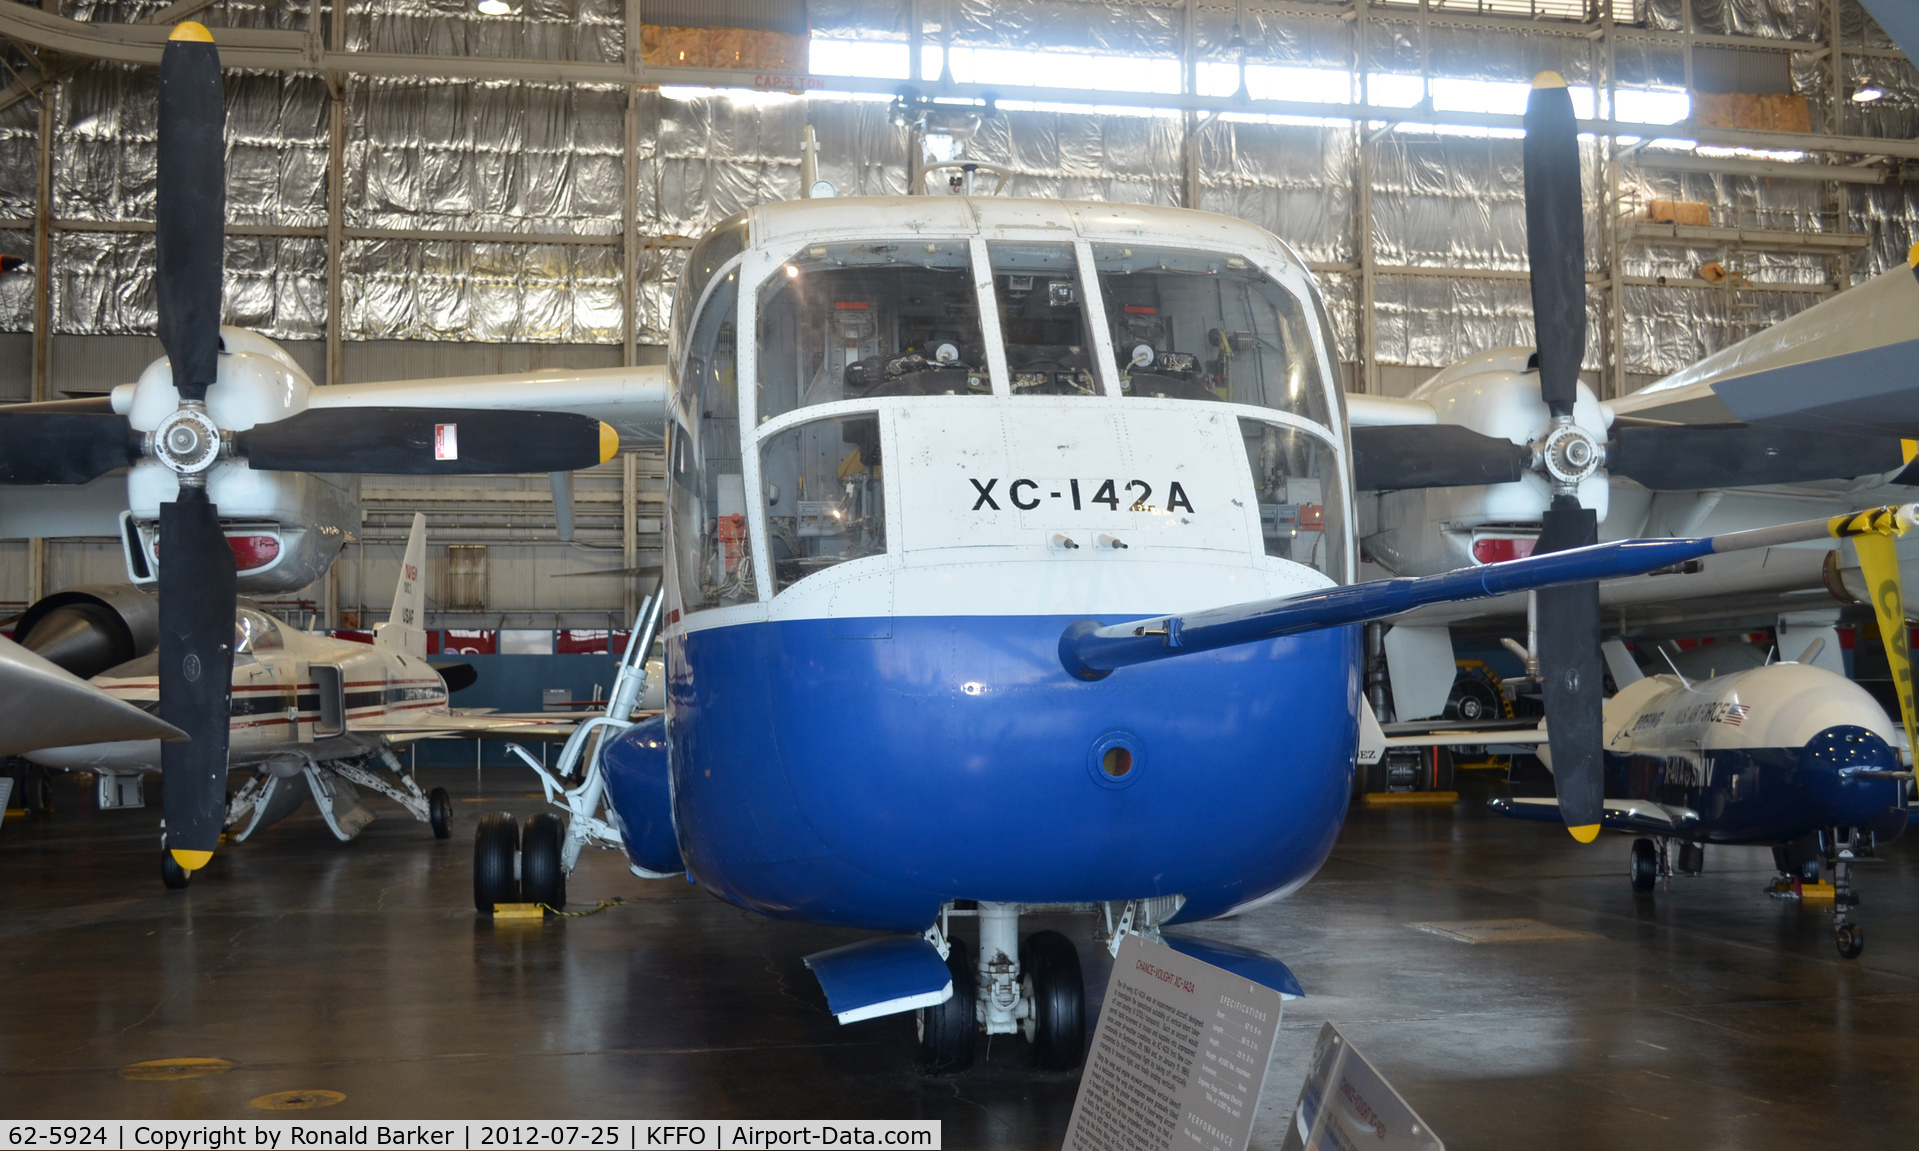 62-5924, 1964 LTV/Hiller/Ryan XC-142A C/N 4, AF Museum